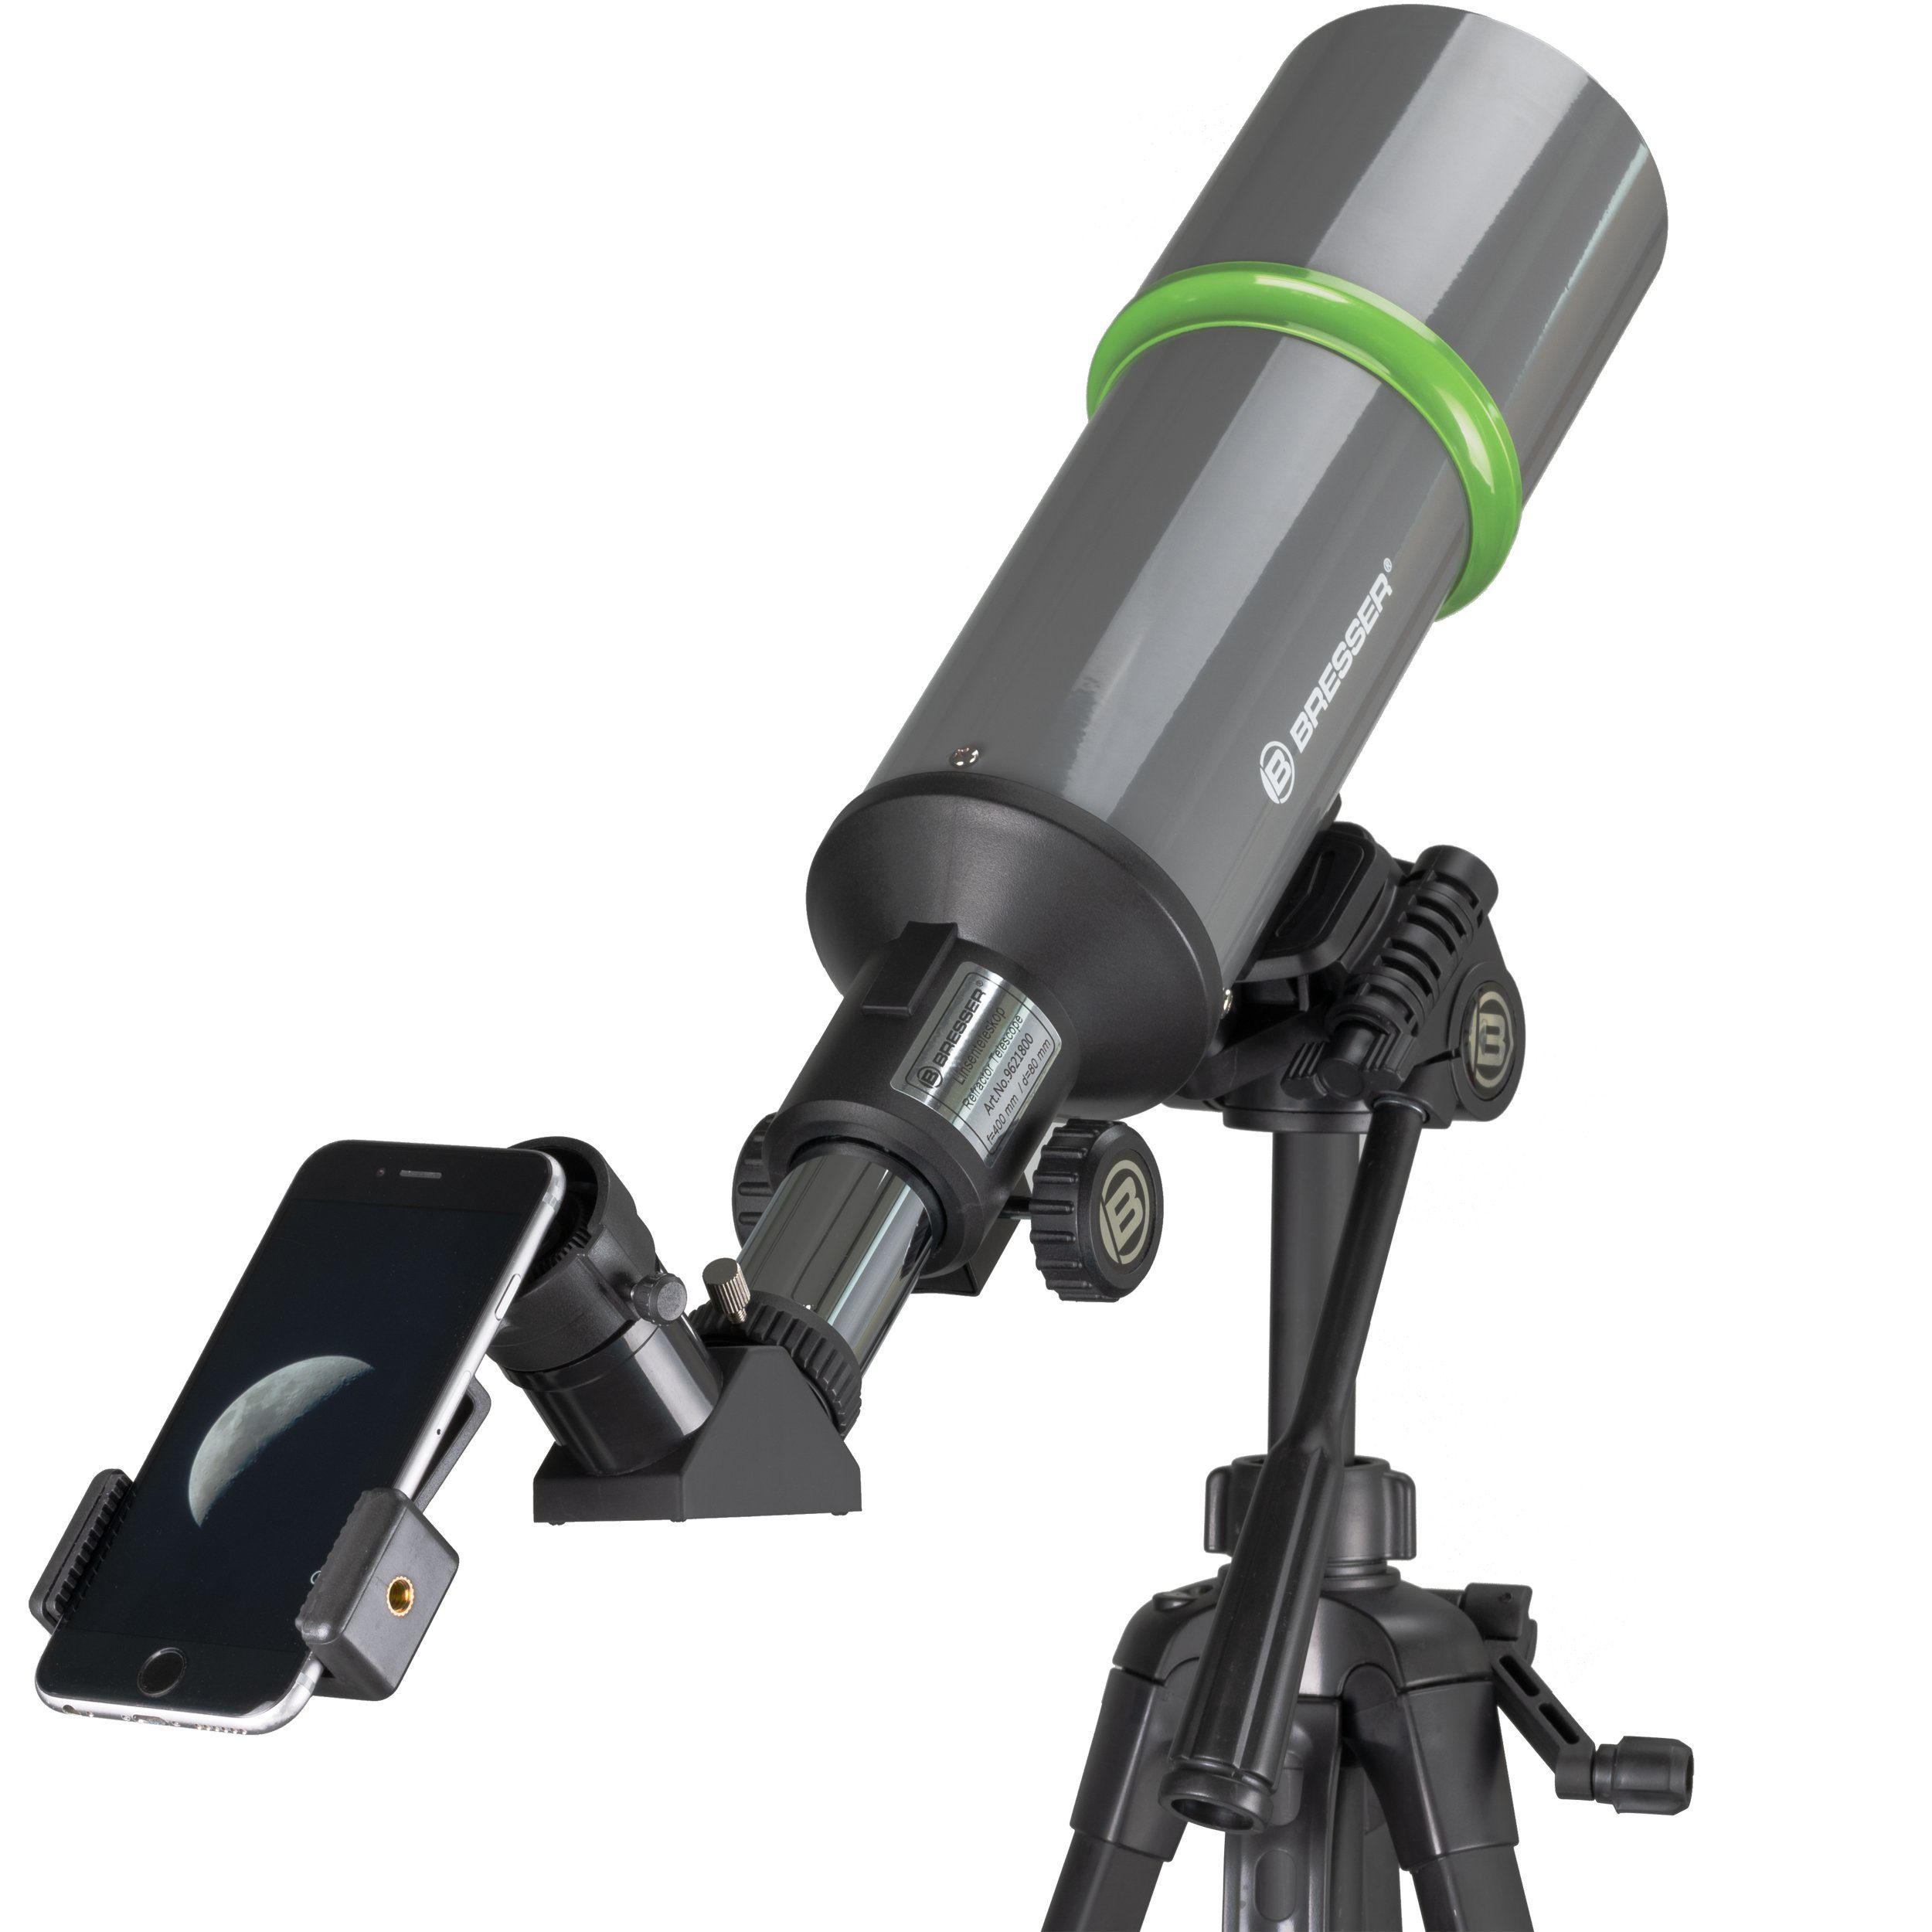 BRESSER NightExplorer 80/400 Reiseteleskop mit Rucksack